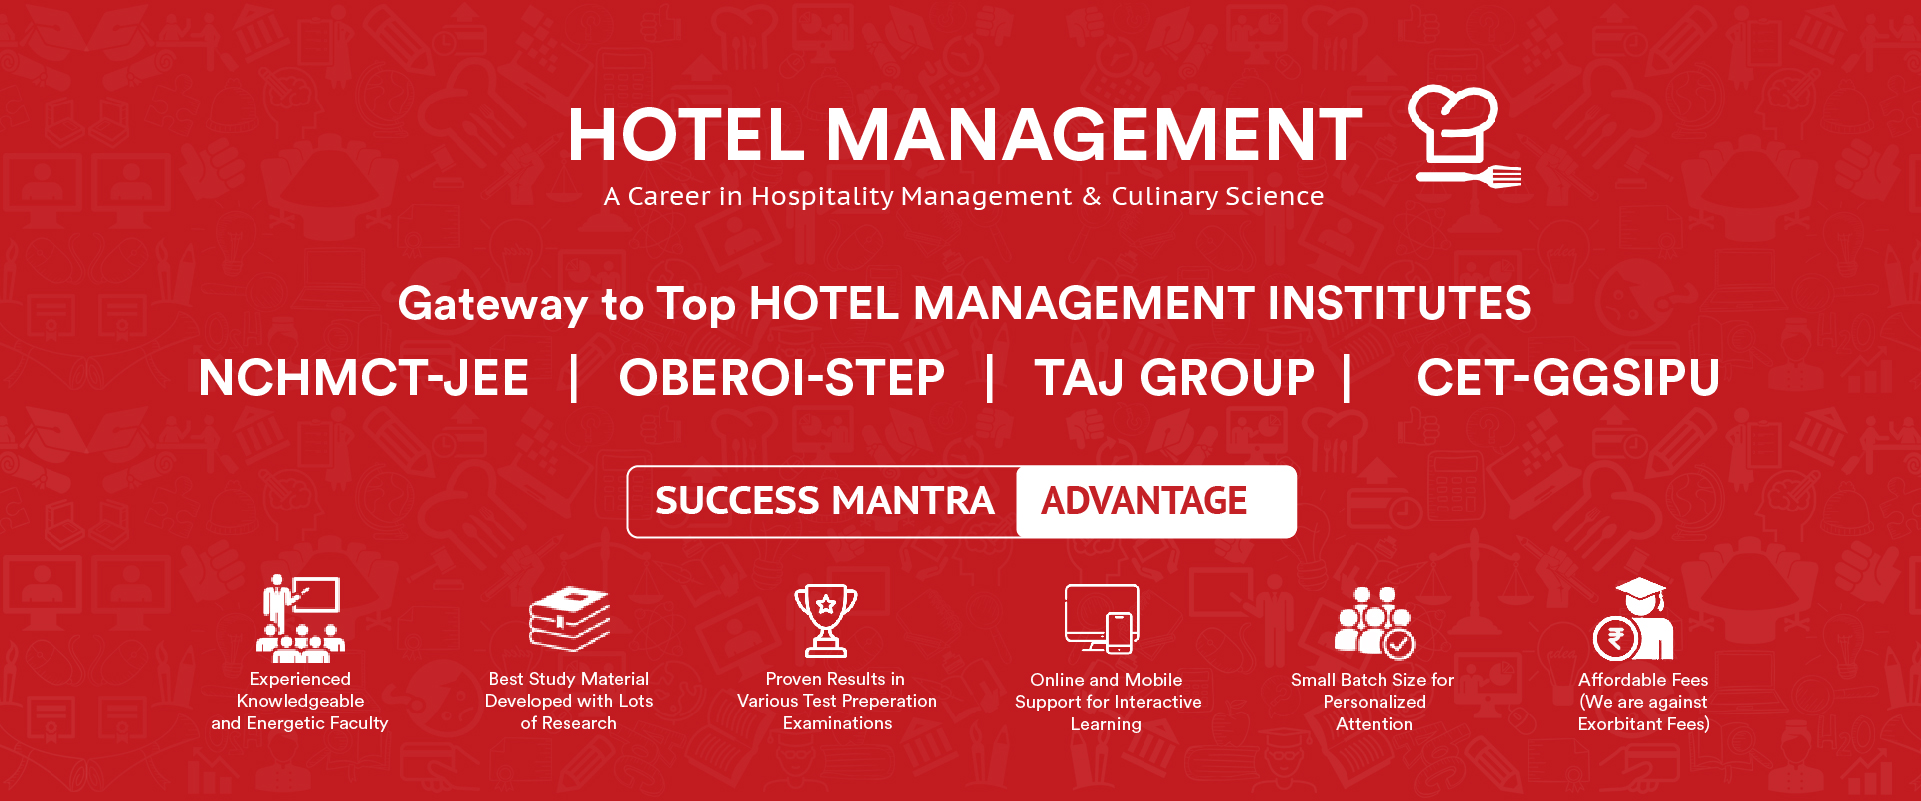 Hotel_Management.jpg